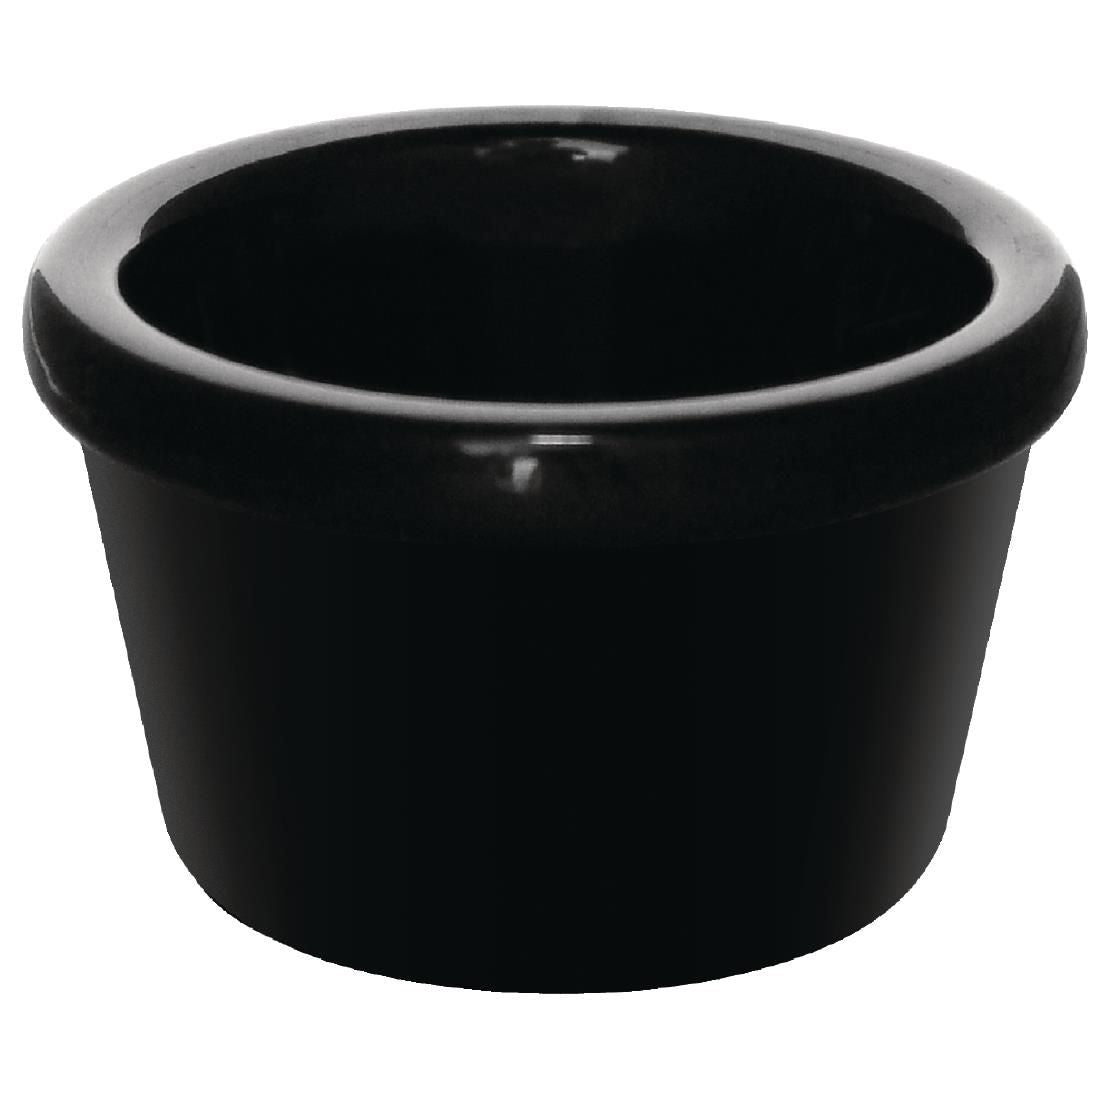 DM161 Kristallon Melamine Plain Ramekins Black 63mm (Pack of 12) JD Catering Equipment Solutions Ltd